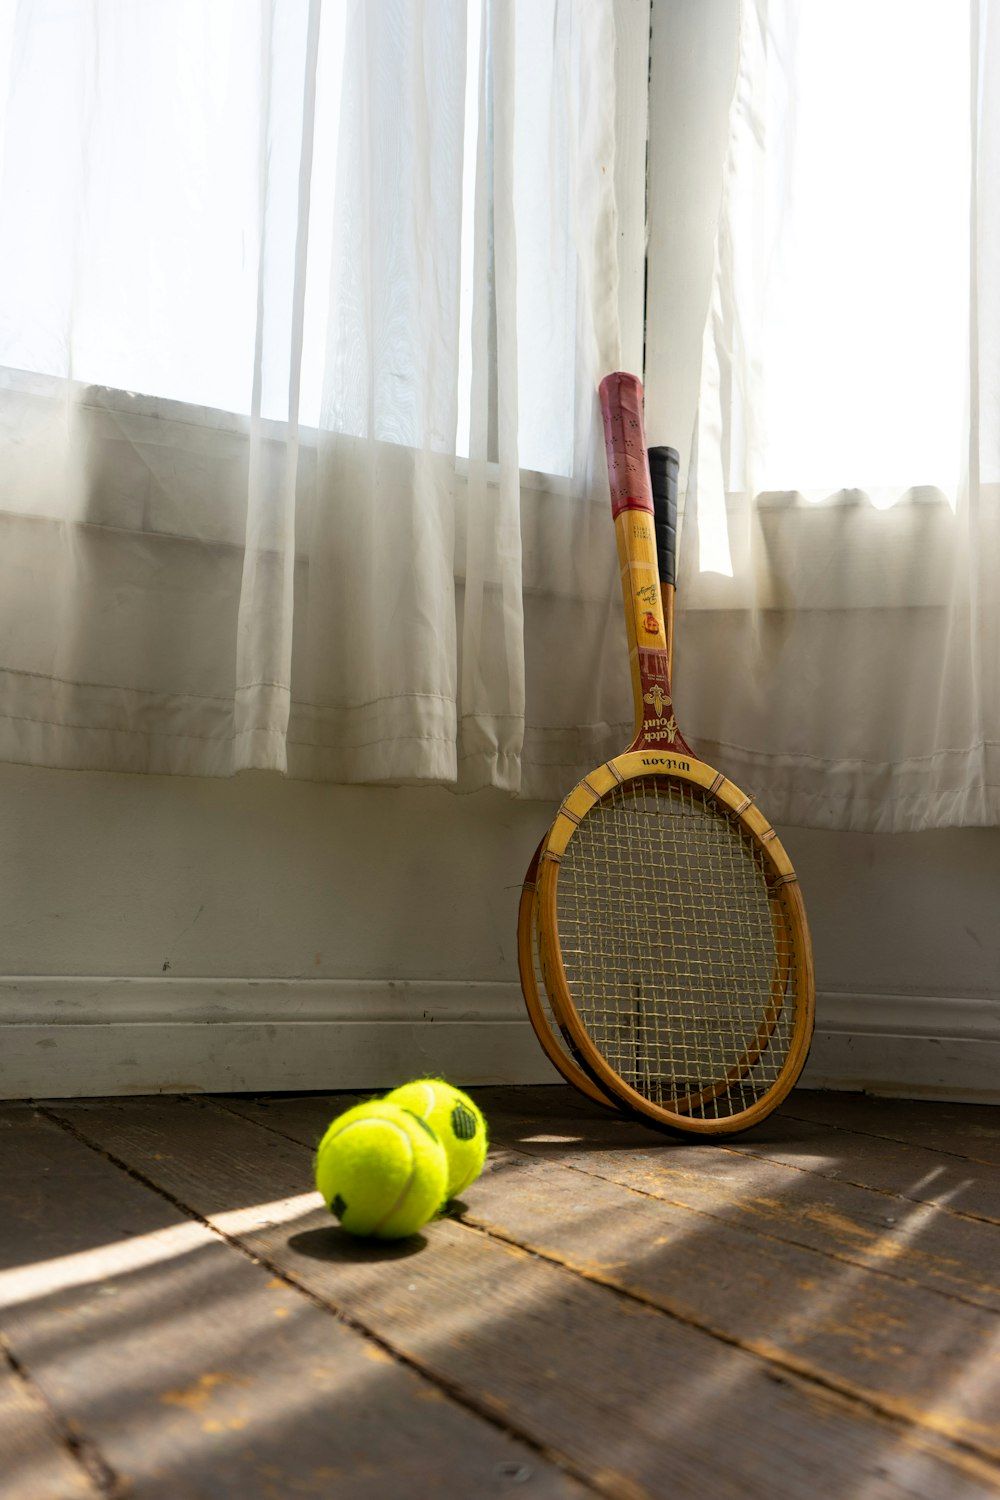 raquete de tênis amarela e preta